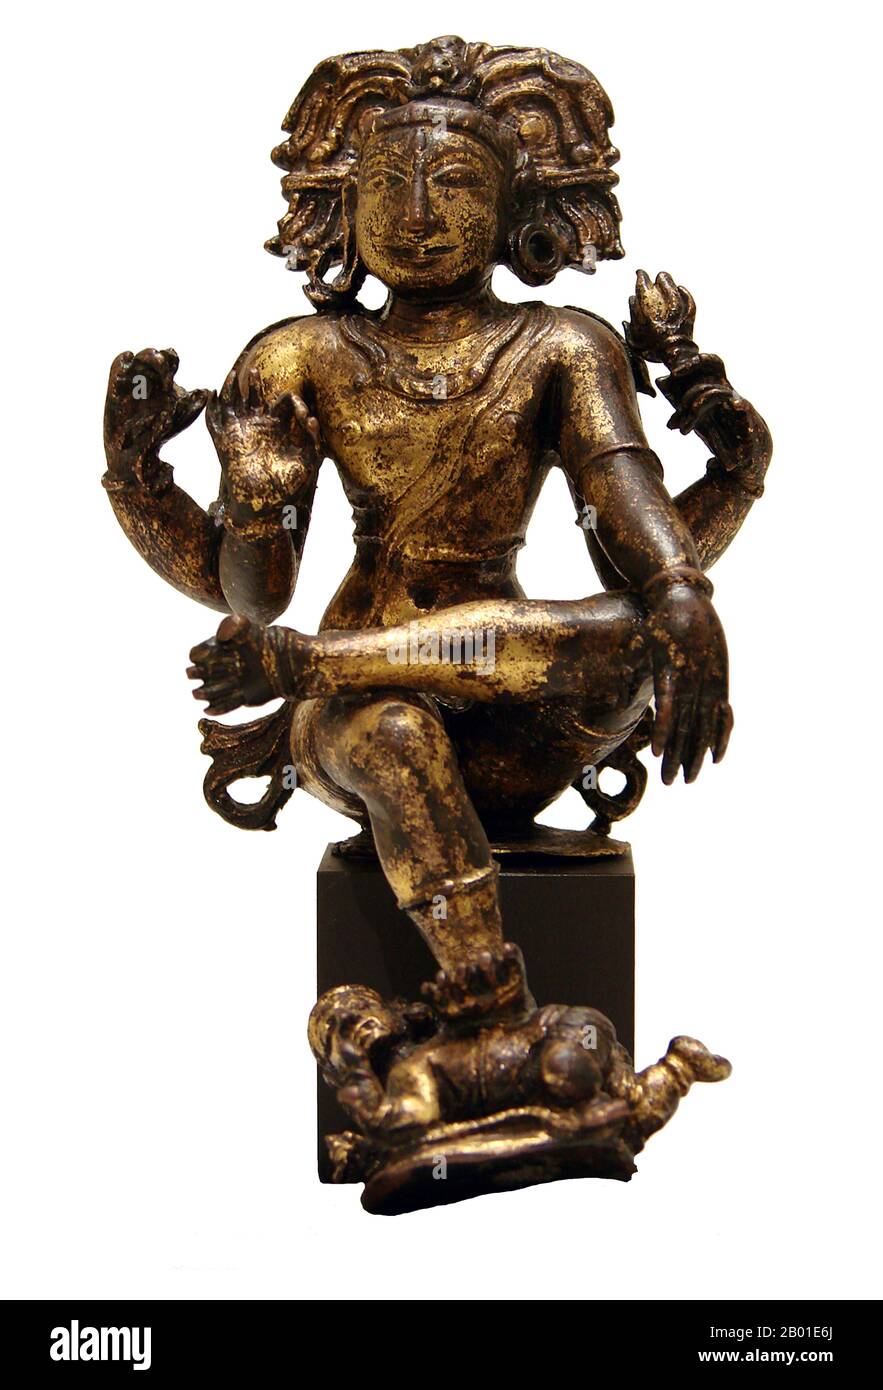 Inde: Shiva comme Dakshinamurthy ou Jnana Dakshinamurti, Seigneur de la connaissance, dynastie Vijayanagar (15th-16th siècle), Tamil Nadu, 16th siècle. Dakshinamurthy ou Jnana Dakshinamurti (Sanskrit: दक्षिणामूर्ति (Dakṣiṇāmūrti)) est un aspect de Shiva en tant que gourou (professeur) de tous les types de connaissances, en particulier le jnana. Cet aspect de Shiva est sa personnification comme la conscience, la compréhension et la connaissance suprêmes ou ultimes. Cette forme représente Shiva dans son aspect comme professeur de yoga, de musique et de sagesse, et donnant l'exposition sur les sastras. Il est adoré comme le dieu de la sagesse. Banque D'Images